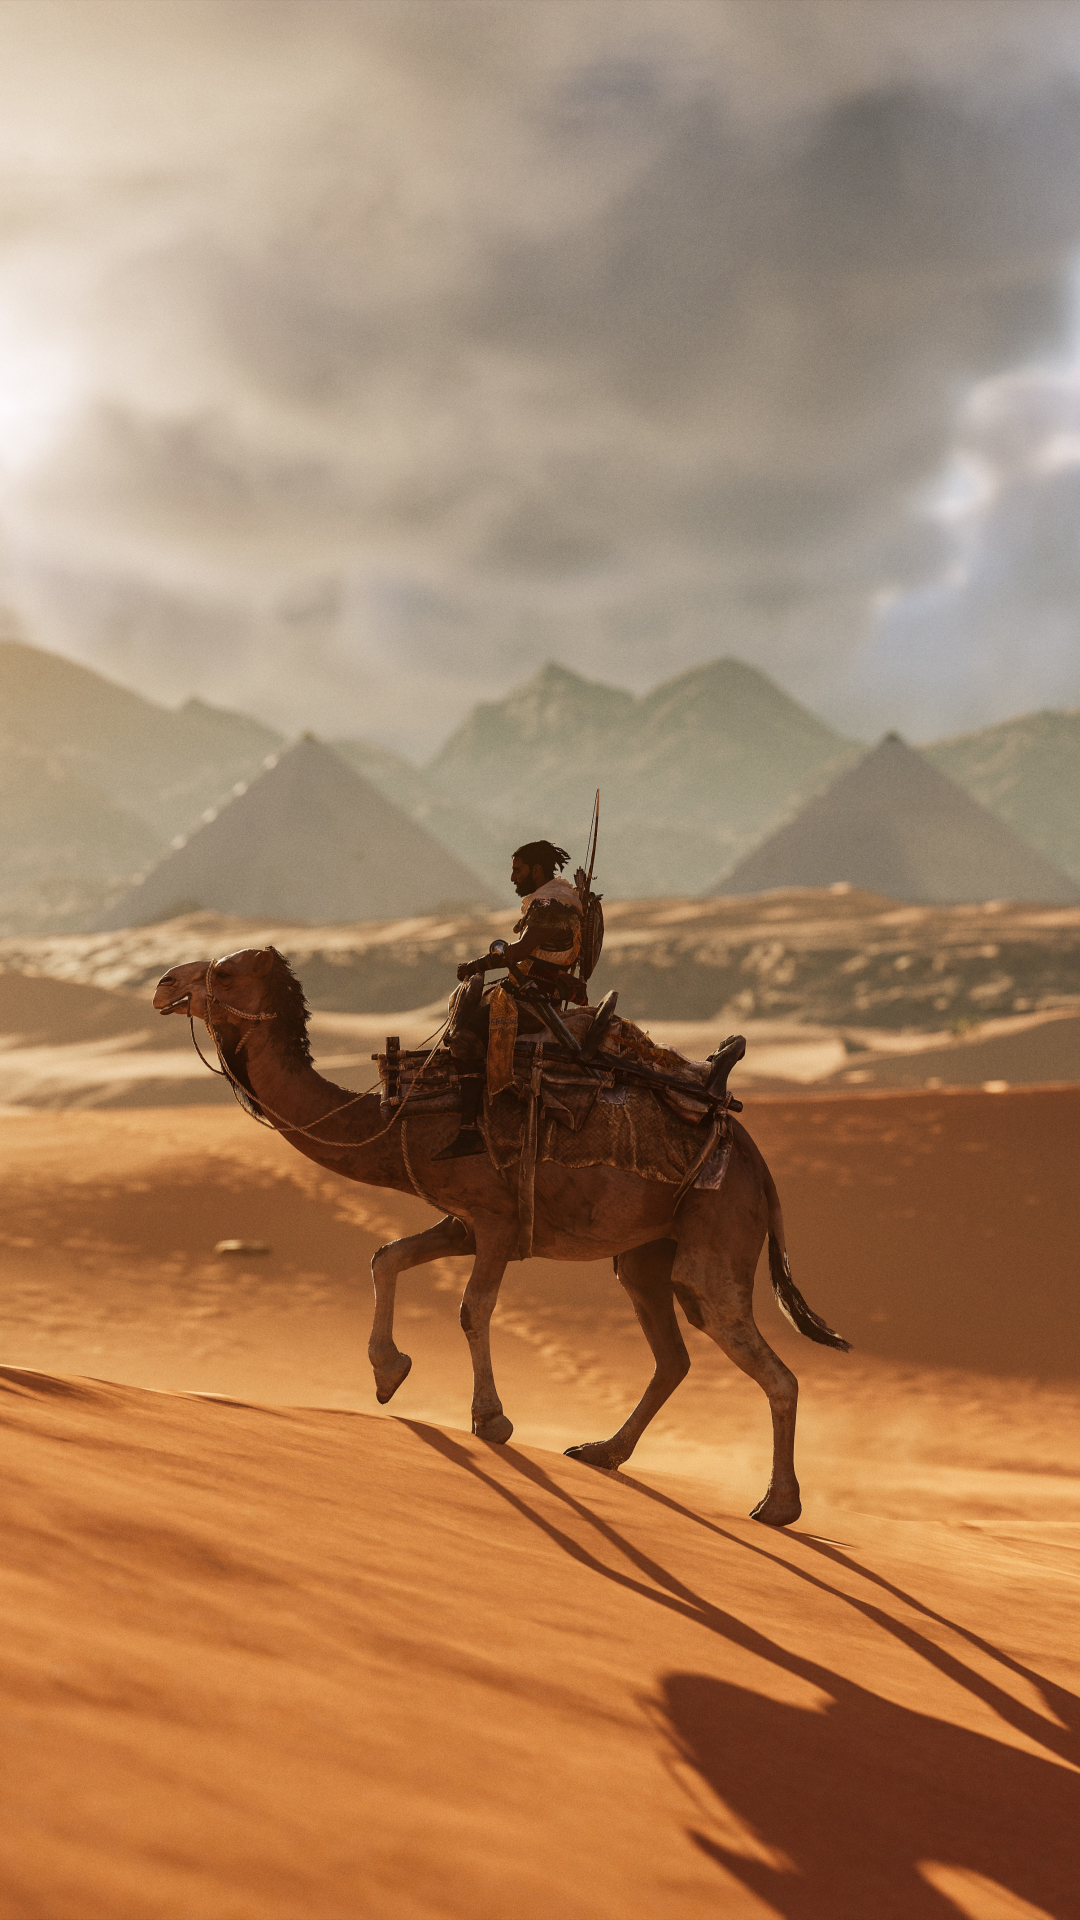 Descarga gratuita de fondo de pantalla para móvil de Arena, Desierto, Guerrero, Camello, Videojuego, Assassin's Creed, Assassin's Creed: Origins.